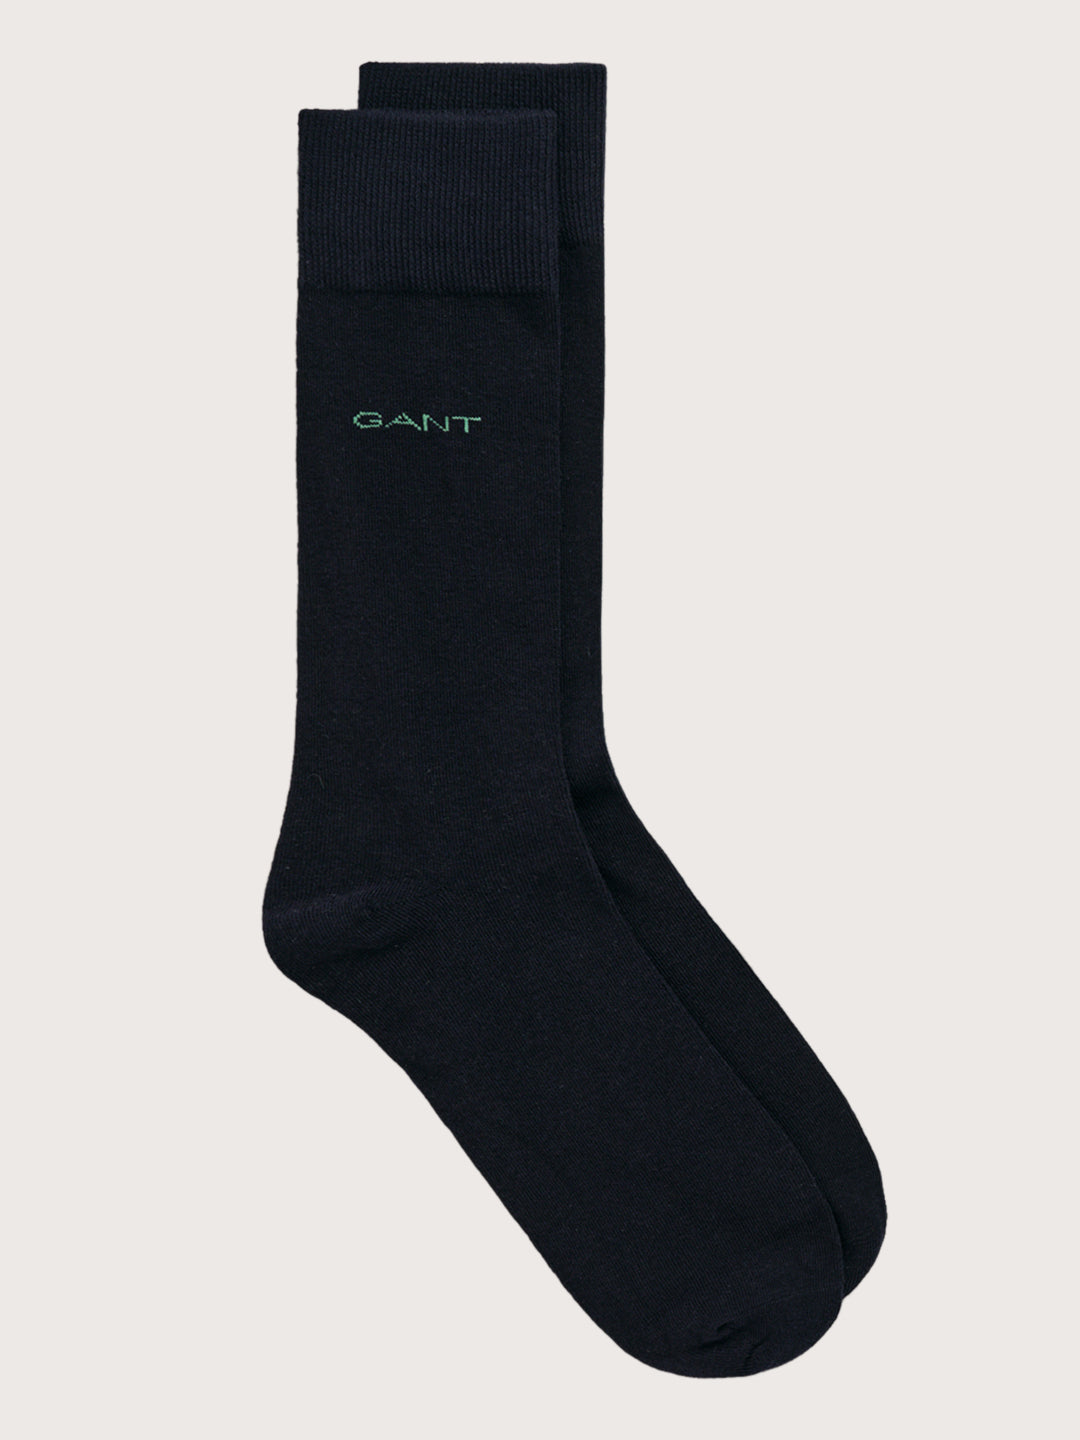 Gant Men Pack Of 2 Patterned Calf-Length Socks